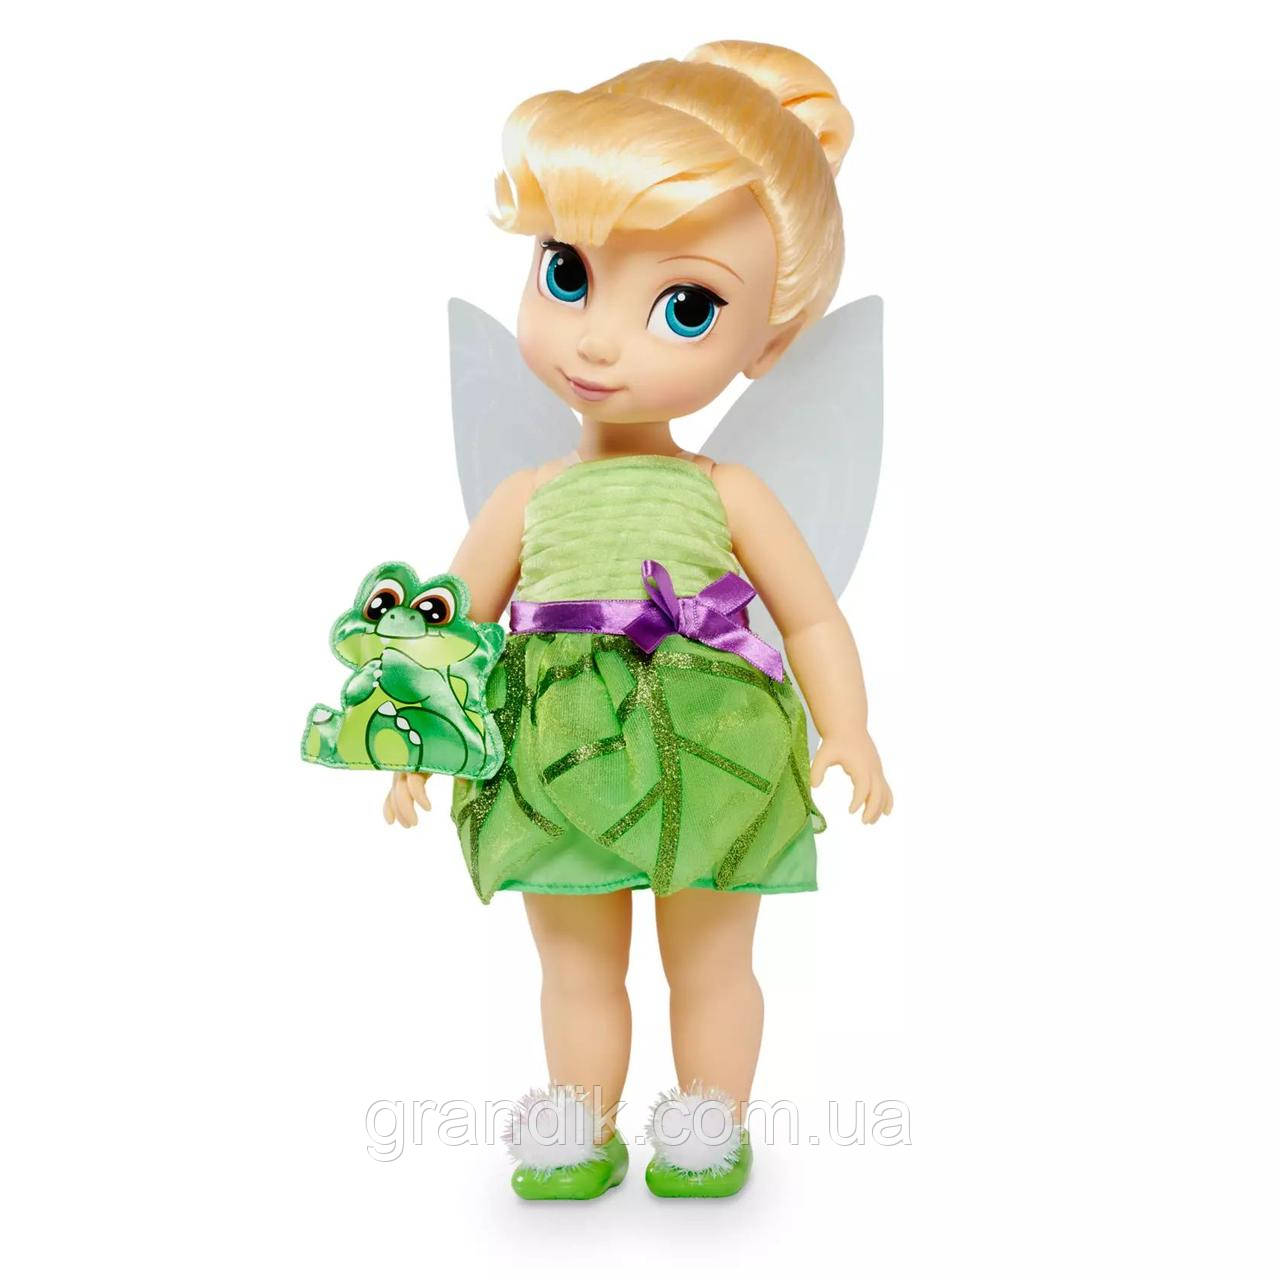 Лялька Фея Дінь Аніматор Дісней, оригінал, Disney Animators' Collection Tinker Bell Doll – Peter Pan